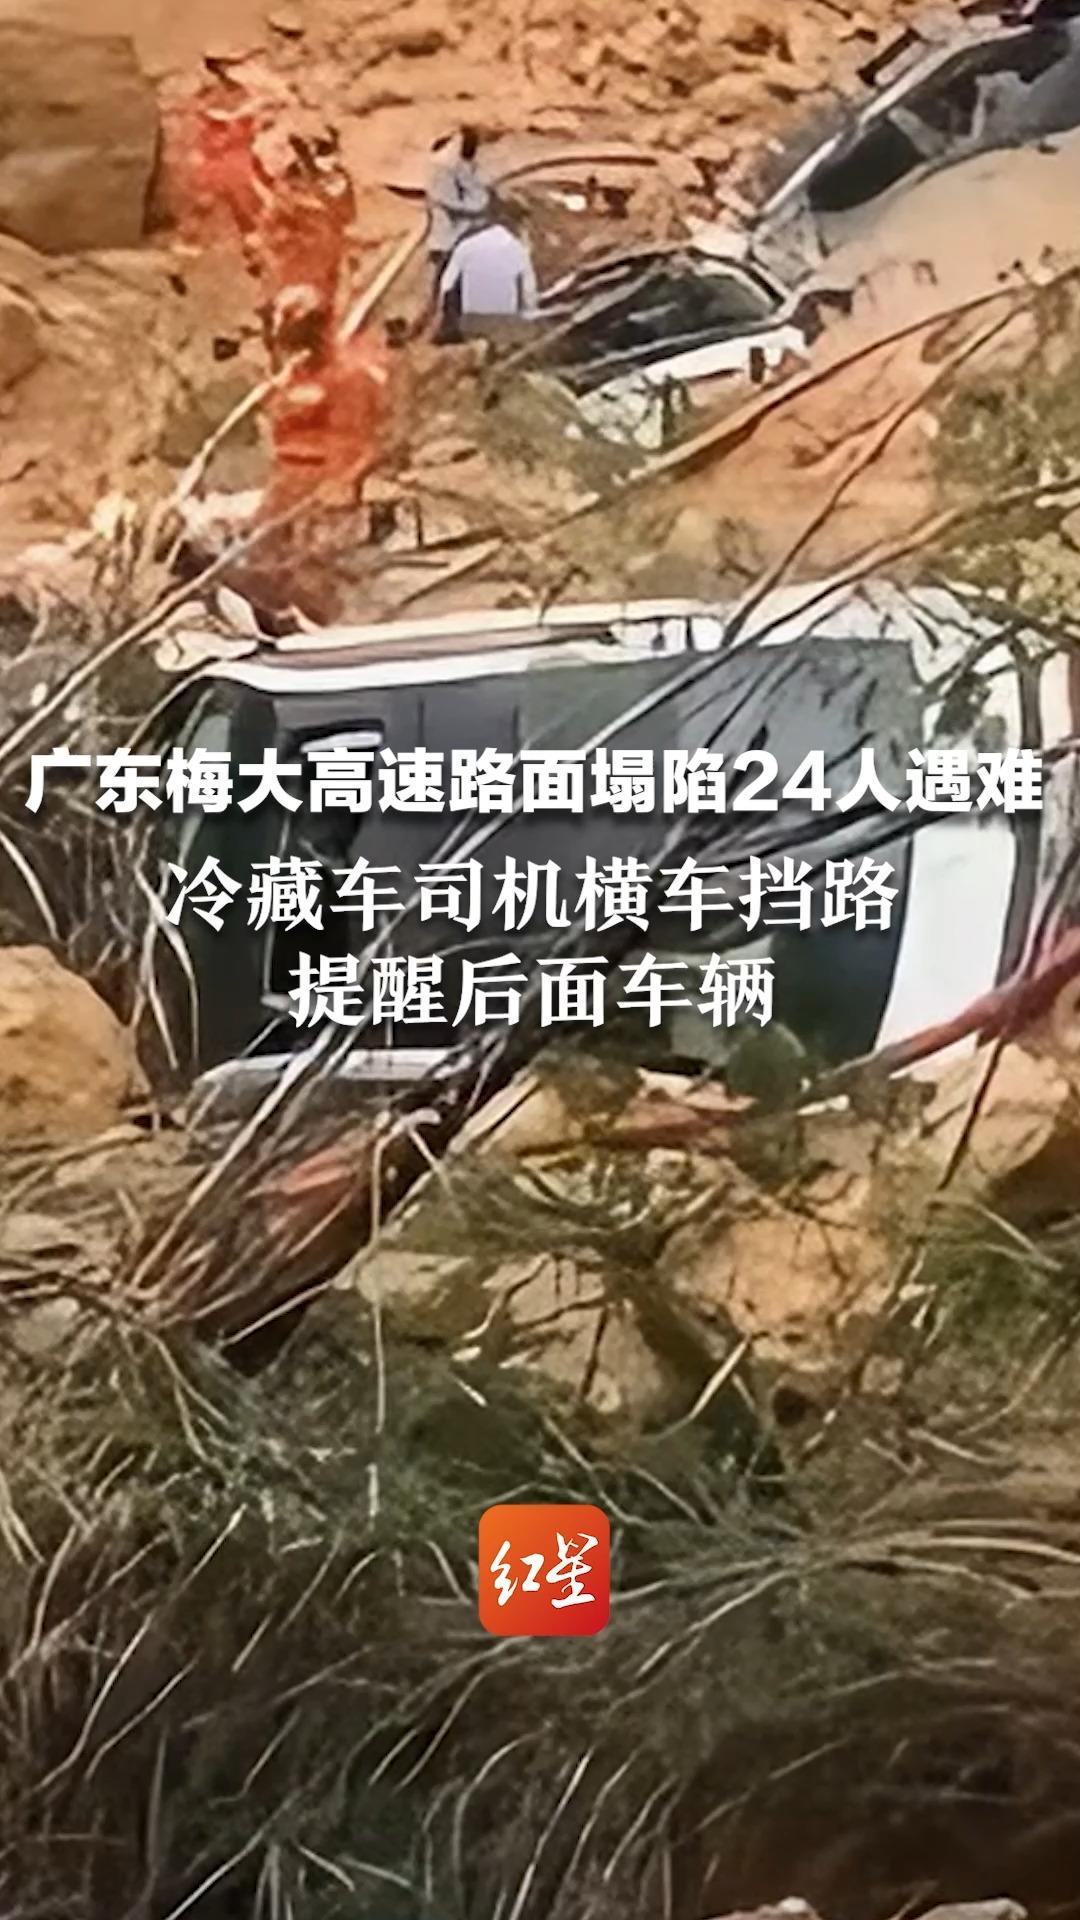 广东梅大高速路面塌陷24人遇难 冷藏车司机横车挡路 提醒后面车辆